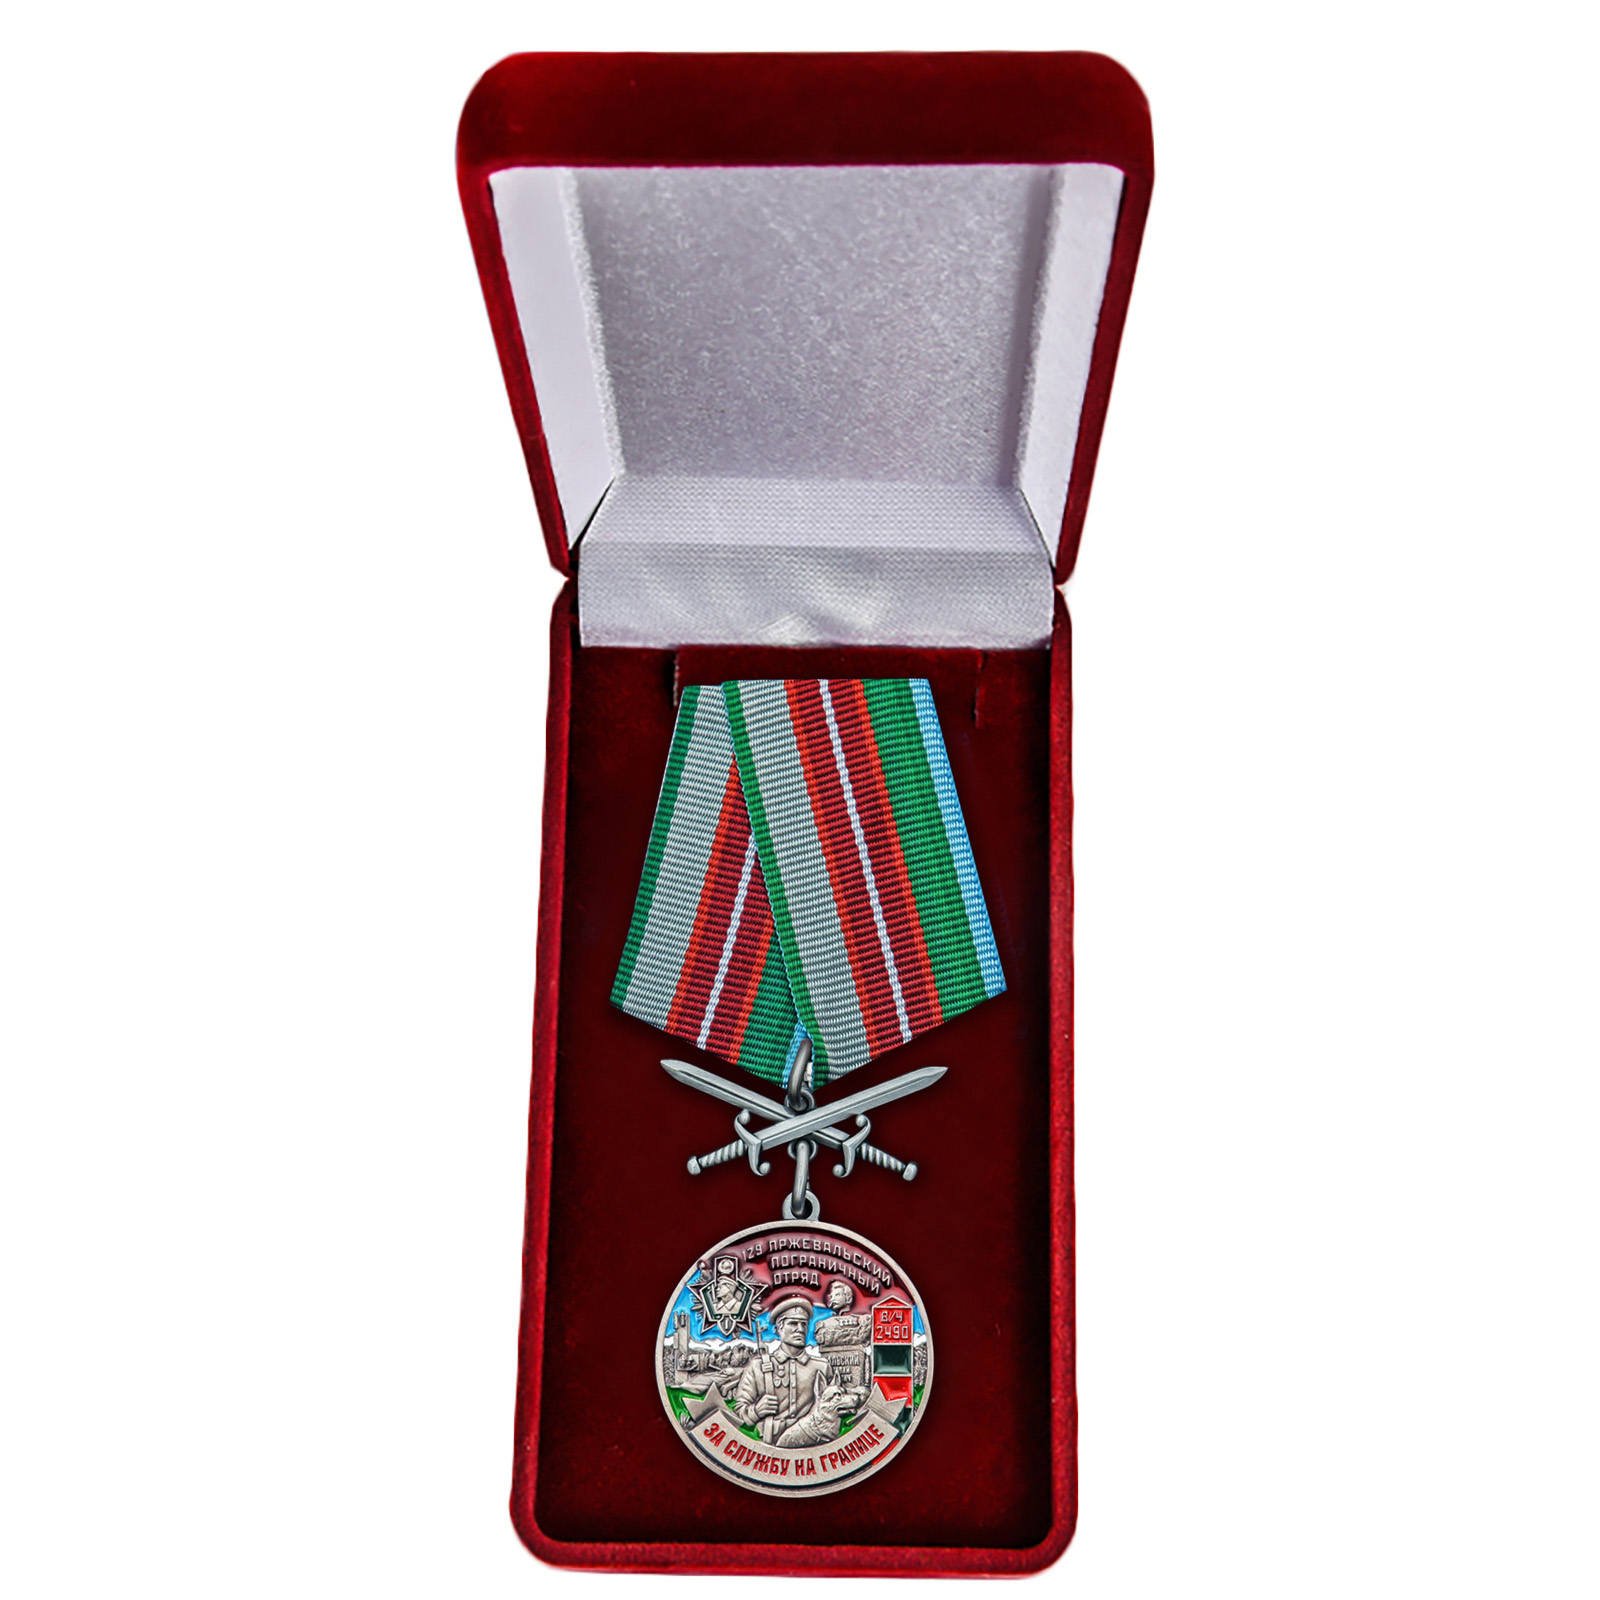 Купить медаль За службу в Пржевальском пограничном отряде онлайн